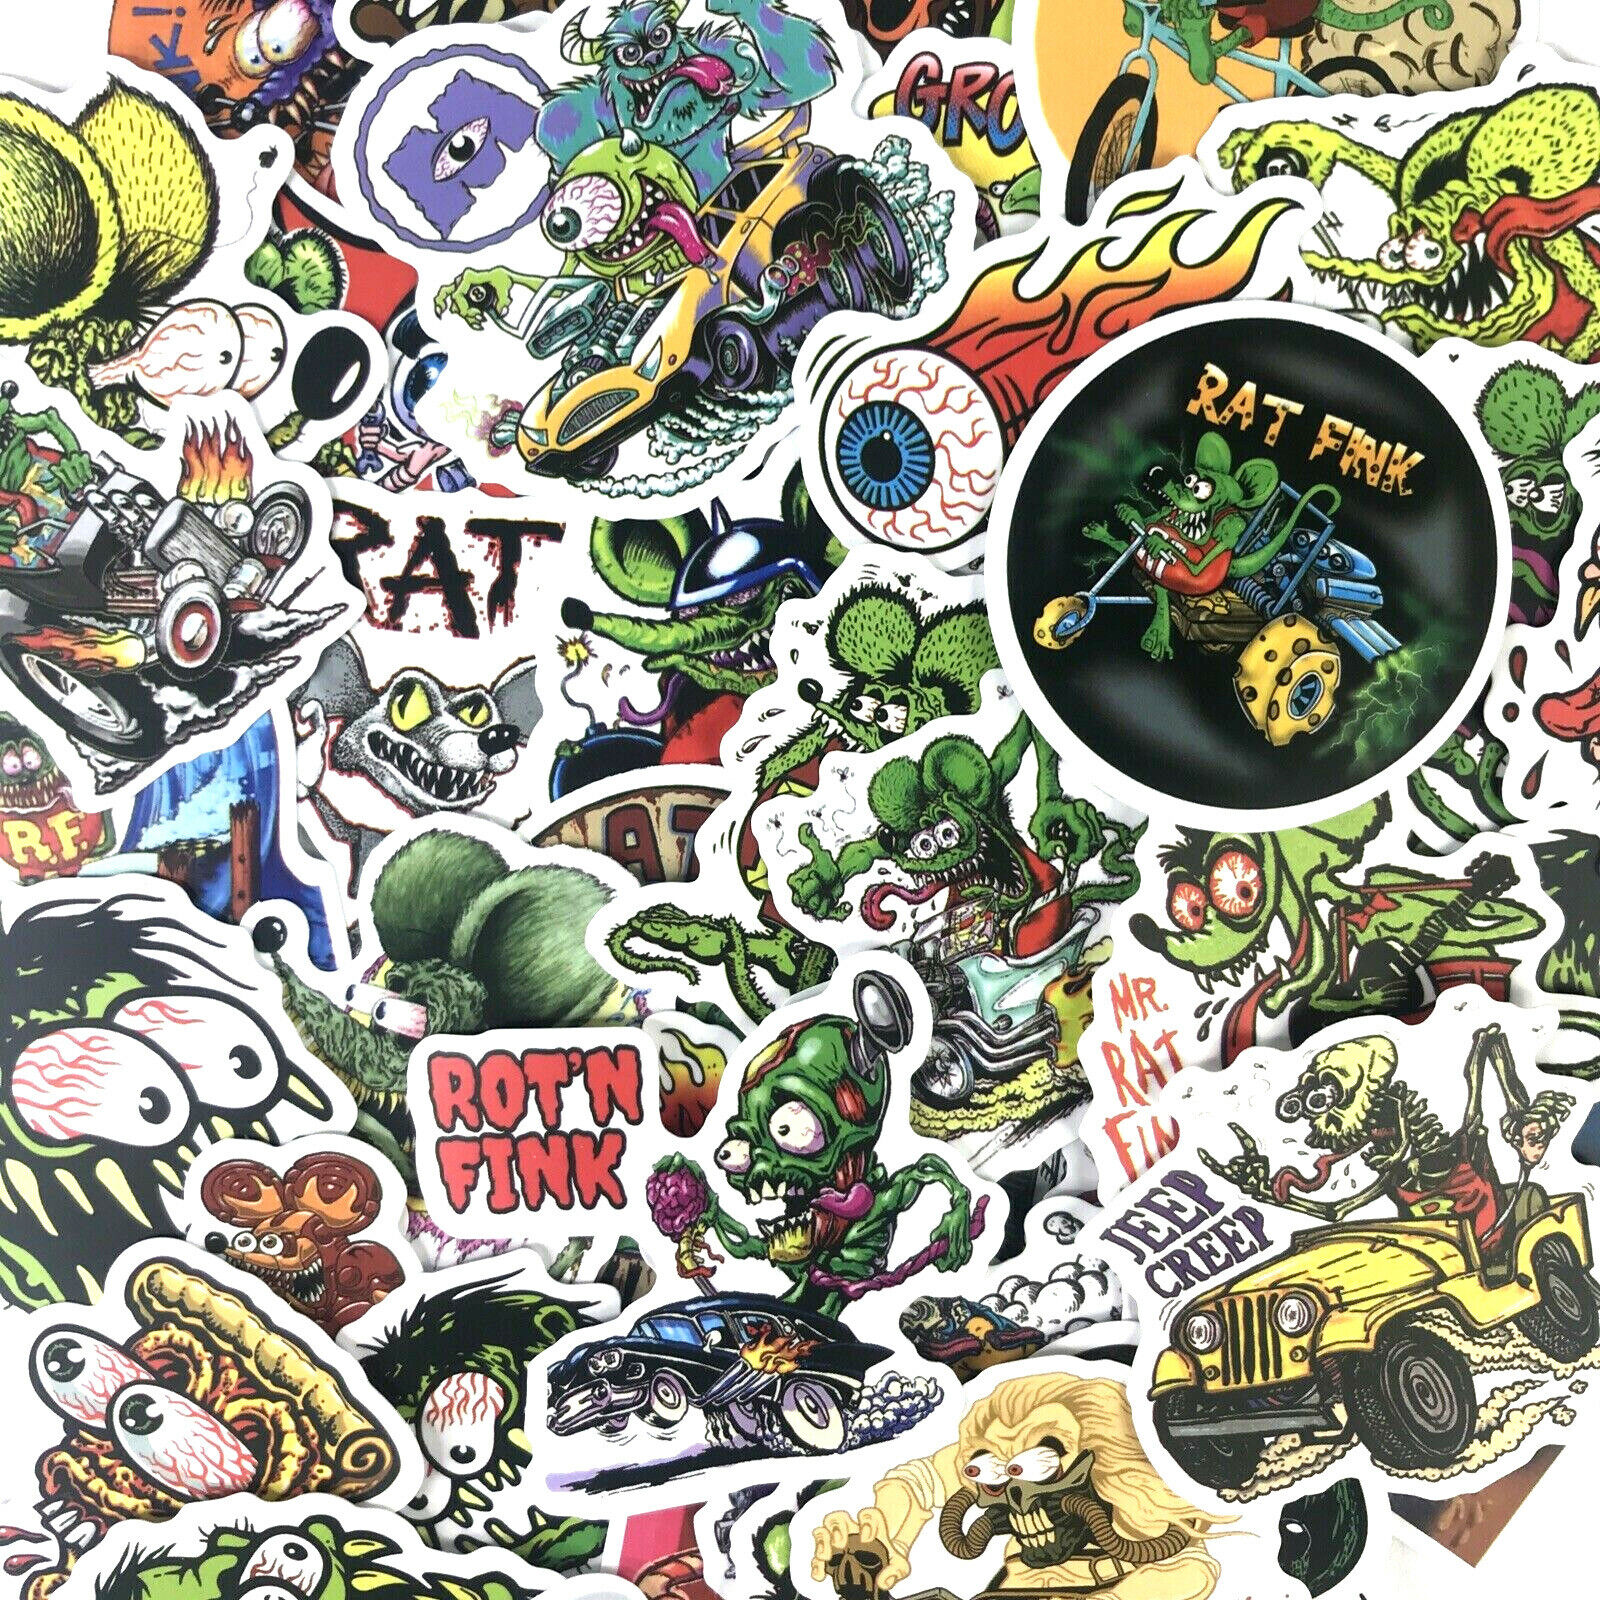 50pc Fearless Rat Fink Monster Hot Rod Freak Skateboard Decal Punk Sticker Pack